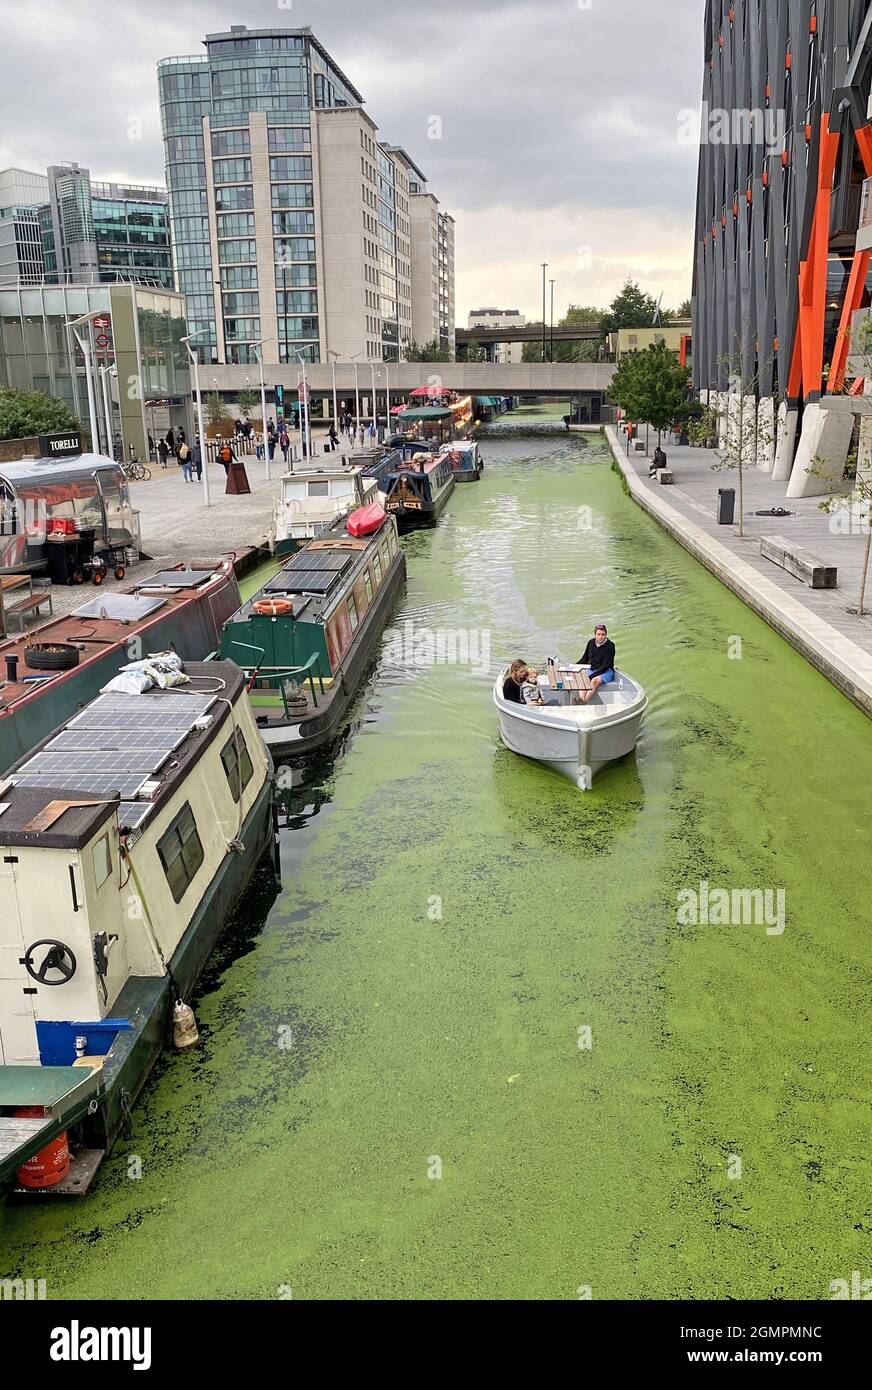 Un Go Boat électrique traverse les eaux couvertes d'algues du Grand Union Canal, dans le bassin de Paddington, à l'ouest de Londres. Date de la photo: Lundi 20 septembre 2021. Banque D'Images